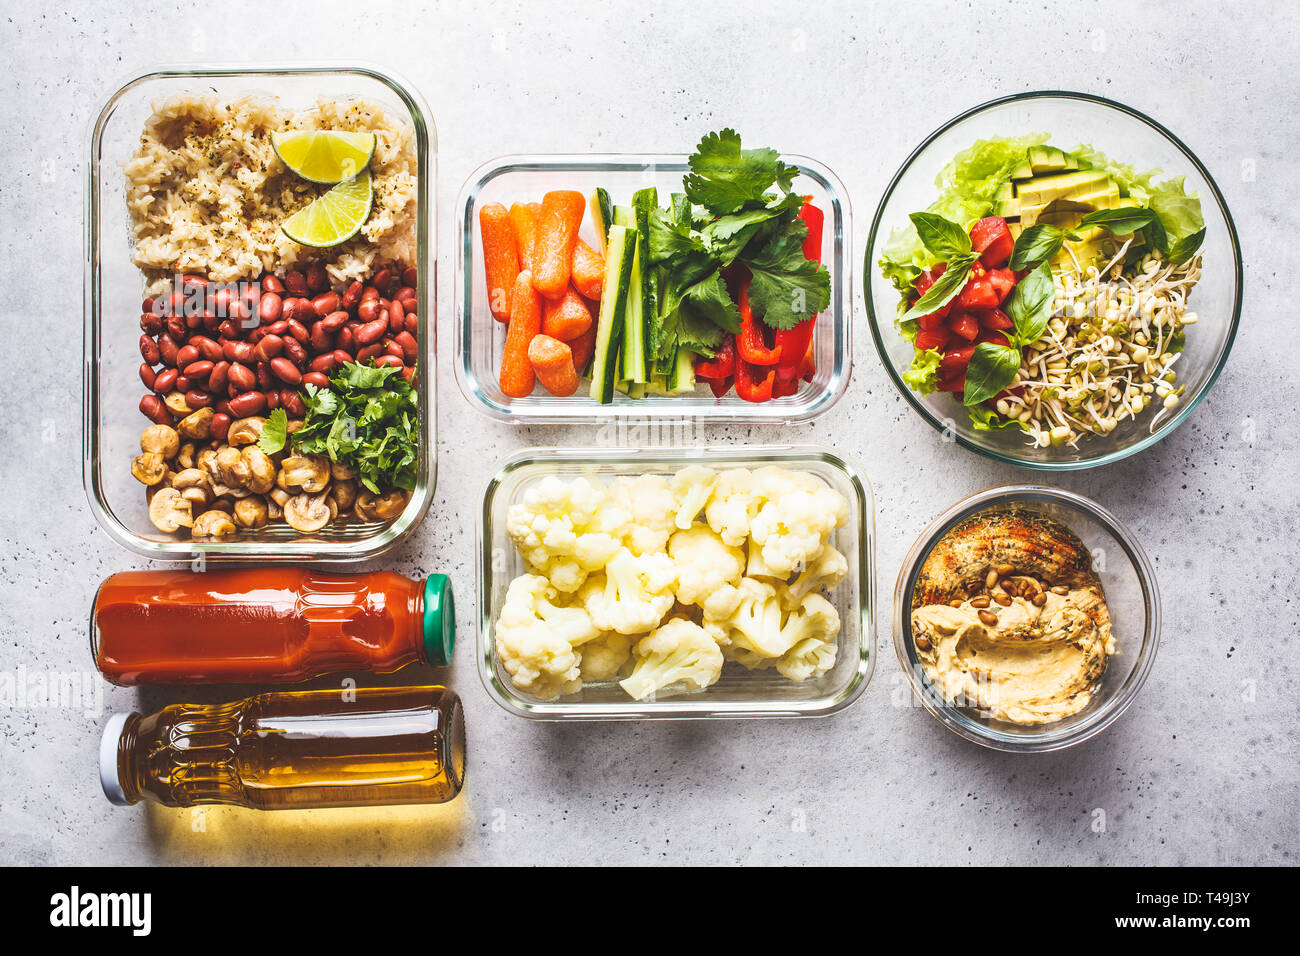 La nourriture végétalienne saine dans des récipients en verre, vue d'en haut. Riz, haricots, légumes, hoummos et jus pour le déjeuner à emporter Banque D'Images